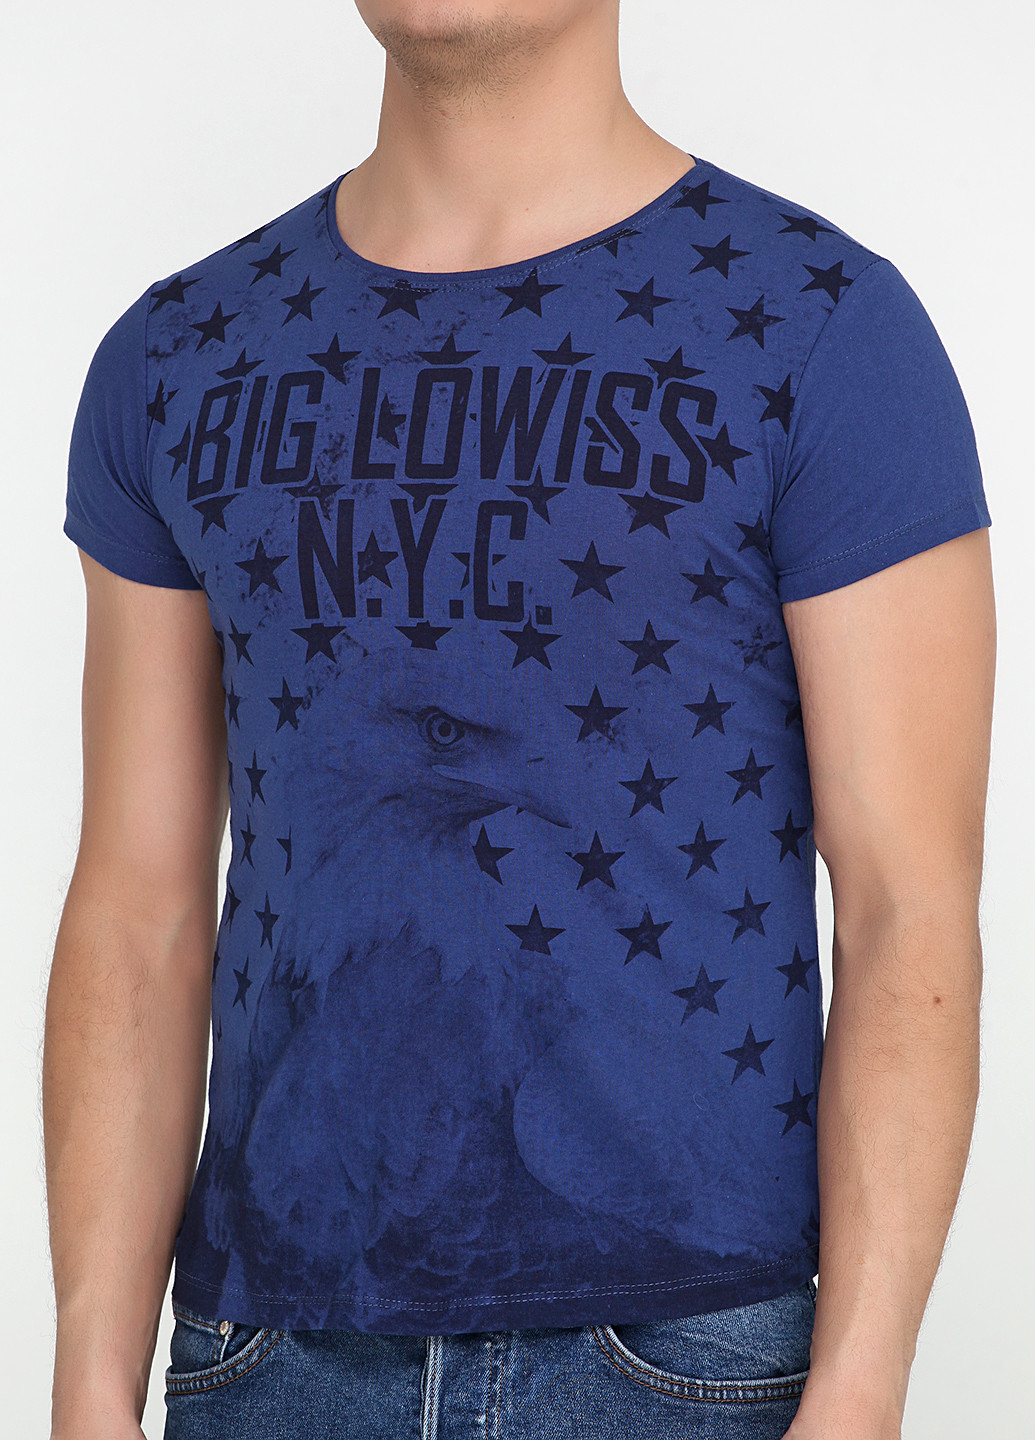 Темно-синяя футболка Big Lowiss